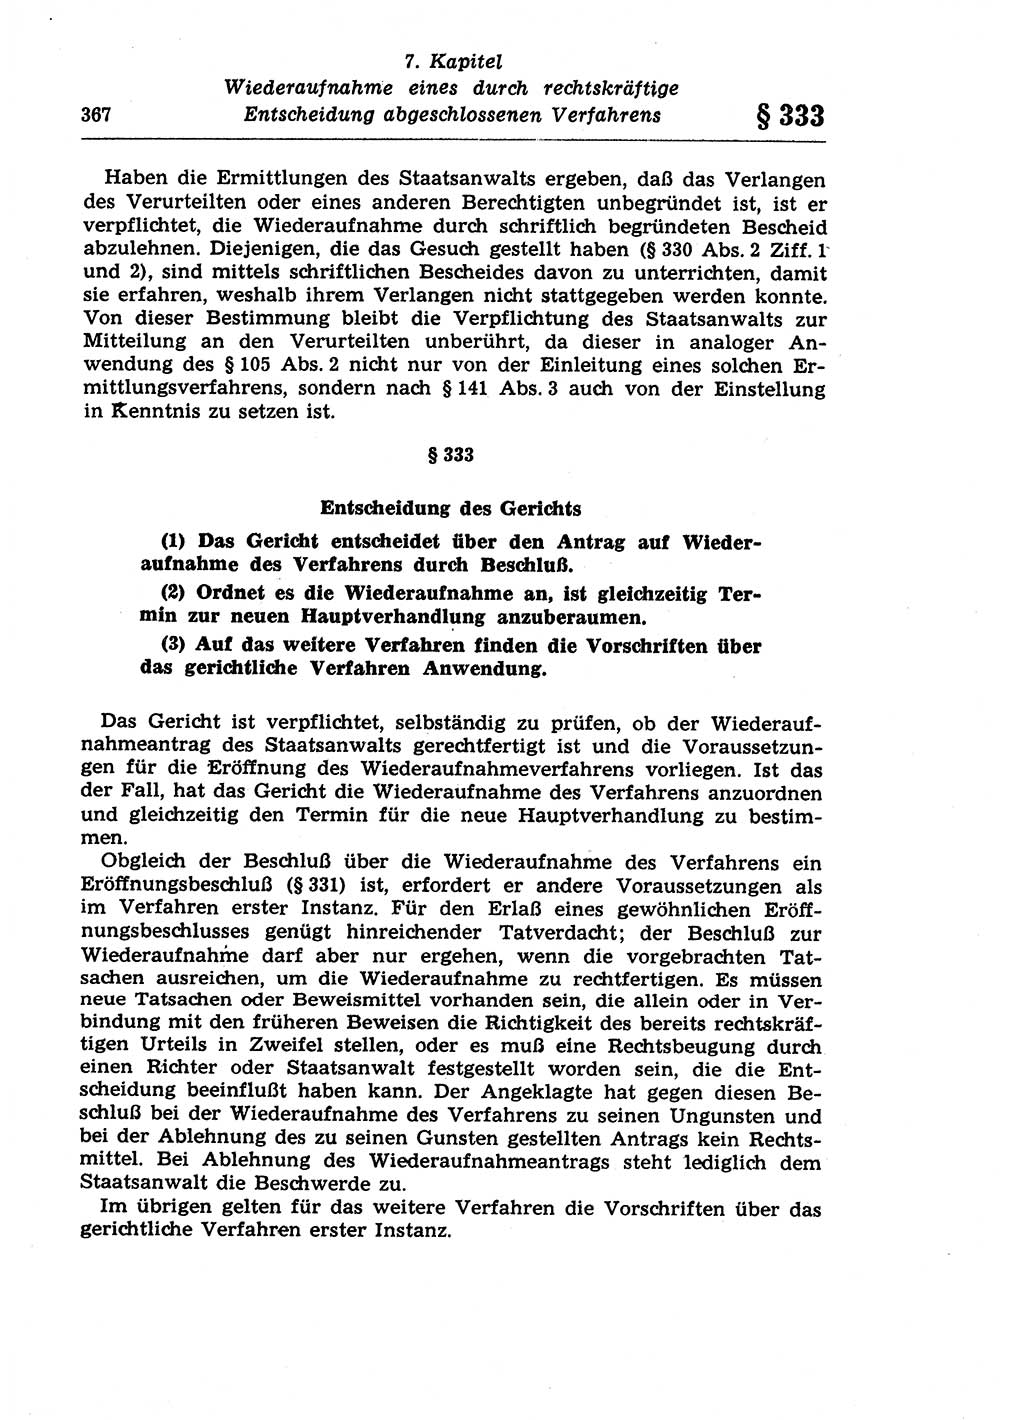 Strafprozeßrecht der DDR (Deutsche Demokratische Republik), Lehrkommentar zur Strafprozeßordnung (StPO) 1968, Seite 367 (Strafprozeßr. DDR Lehrkomm. StPO 19688, S. 367)